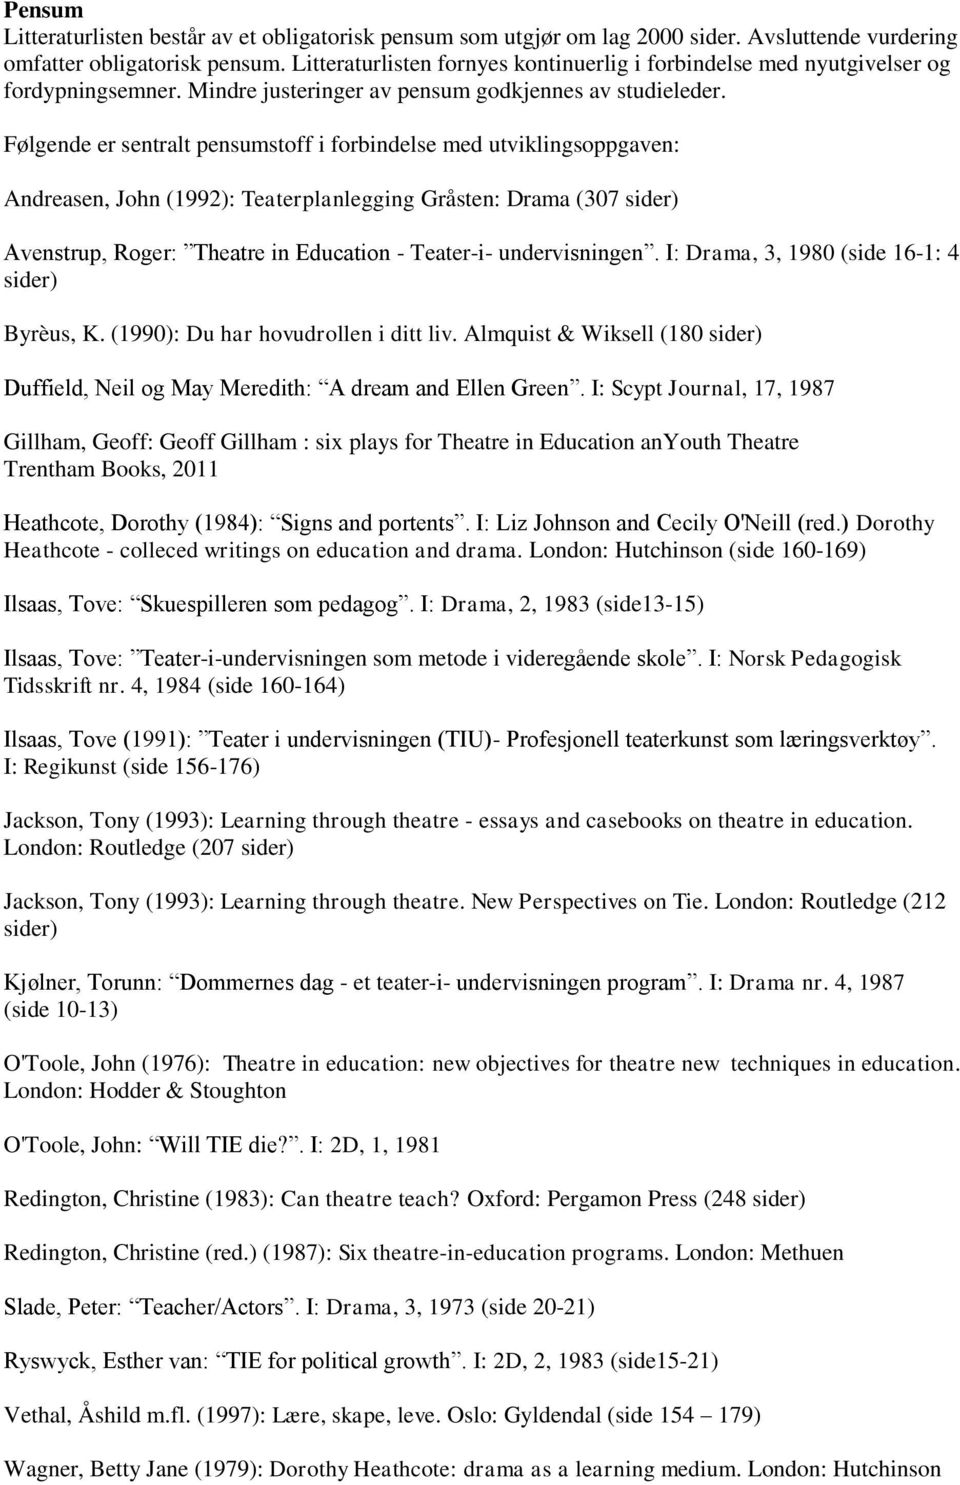 Følgende er sentralt pensumstoff i forbindelse med utviklingsoppgaven: Andreasen, John (1992): Teaterplanlegging Gråsten: Drama (307 sider) Avenstrup, Roger: Theatre in Education - Teater-i-